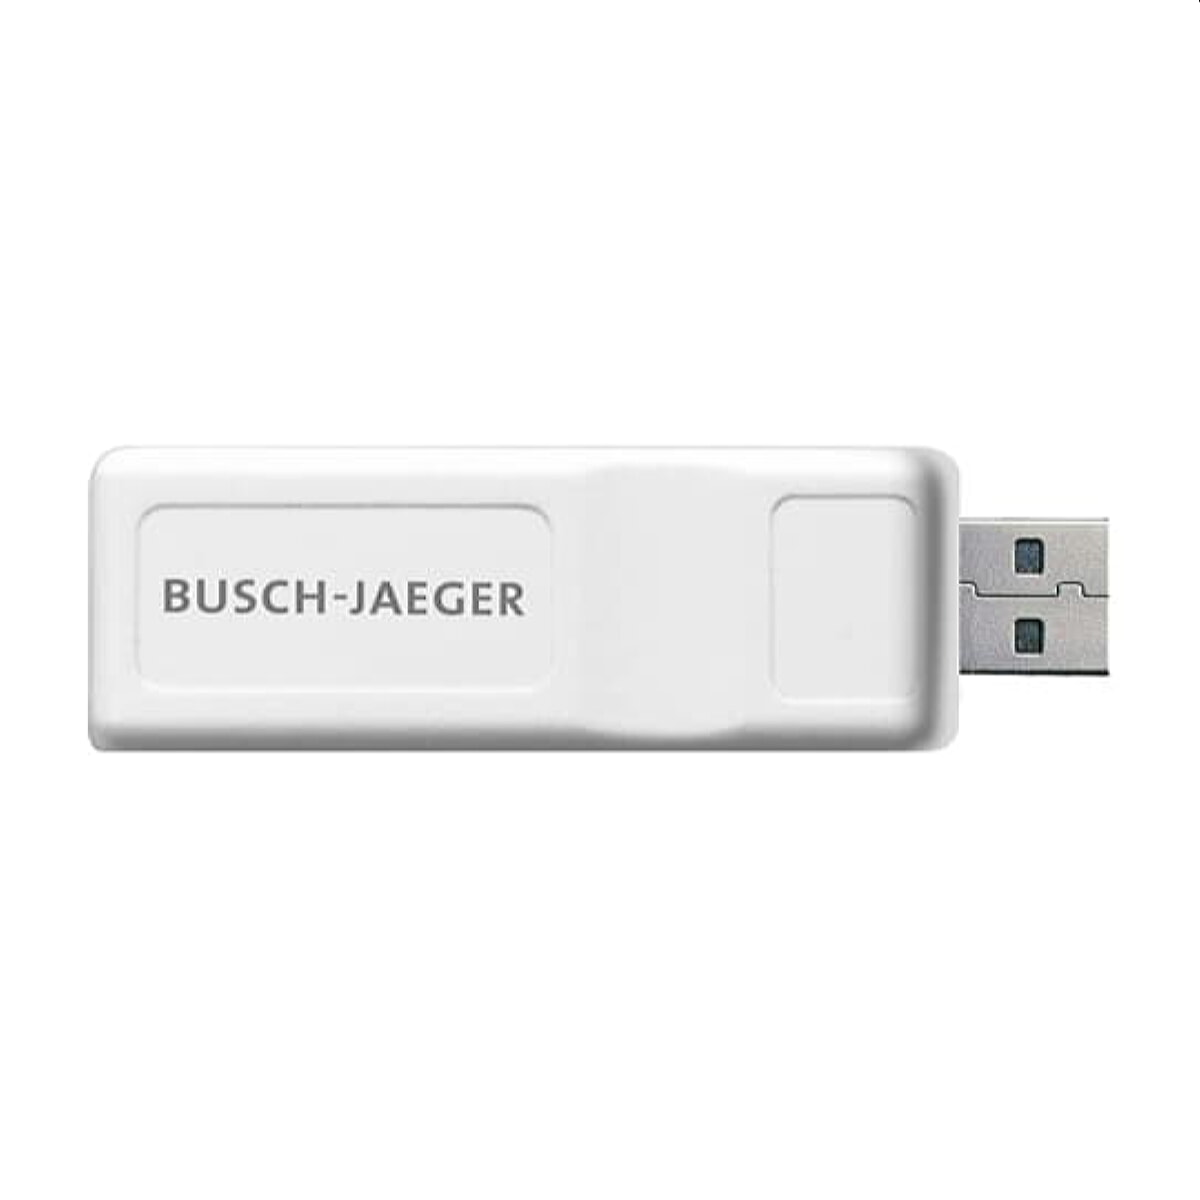 Busch-Jaeger USB-Stick SAP/A2.11